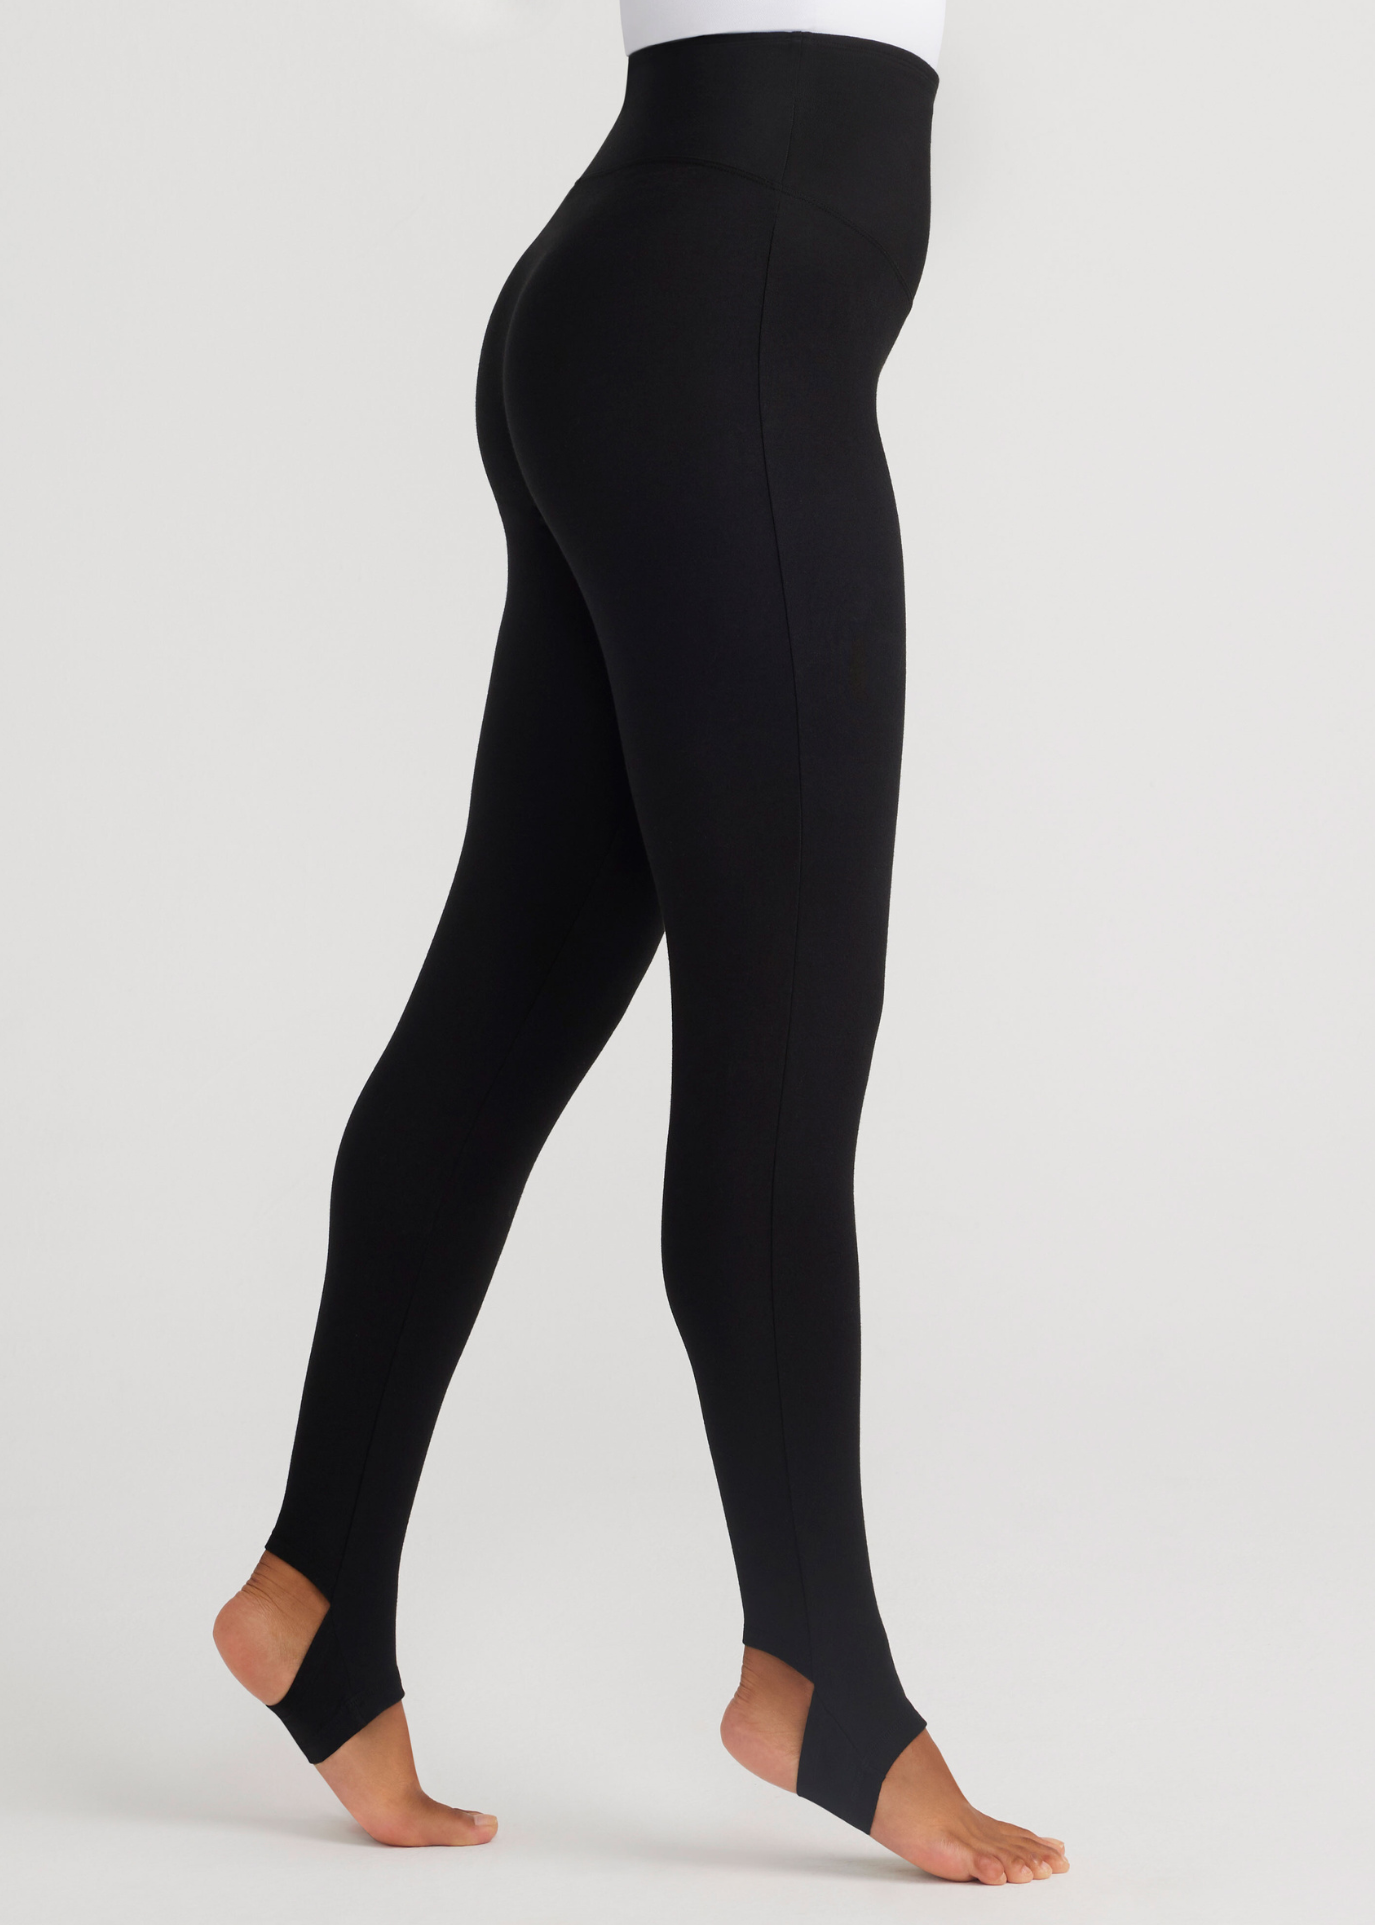 mason stirrup shaping legging - cotton stretch in Black worn by a woman standing sideways Yummie